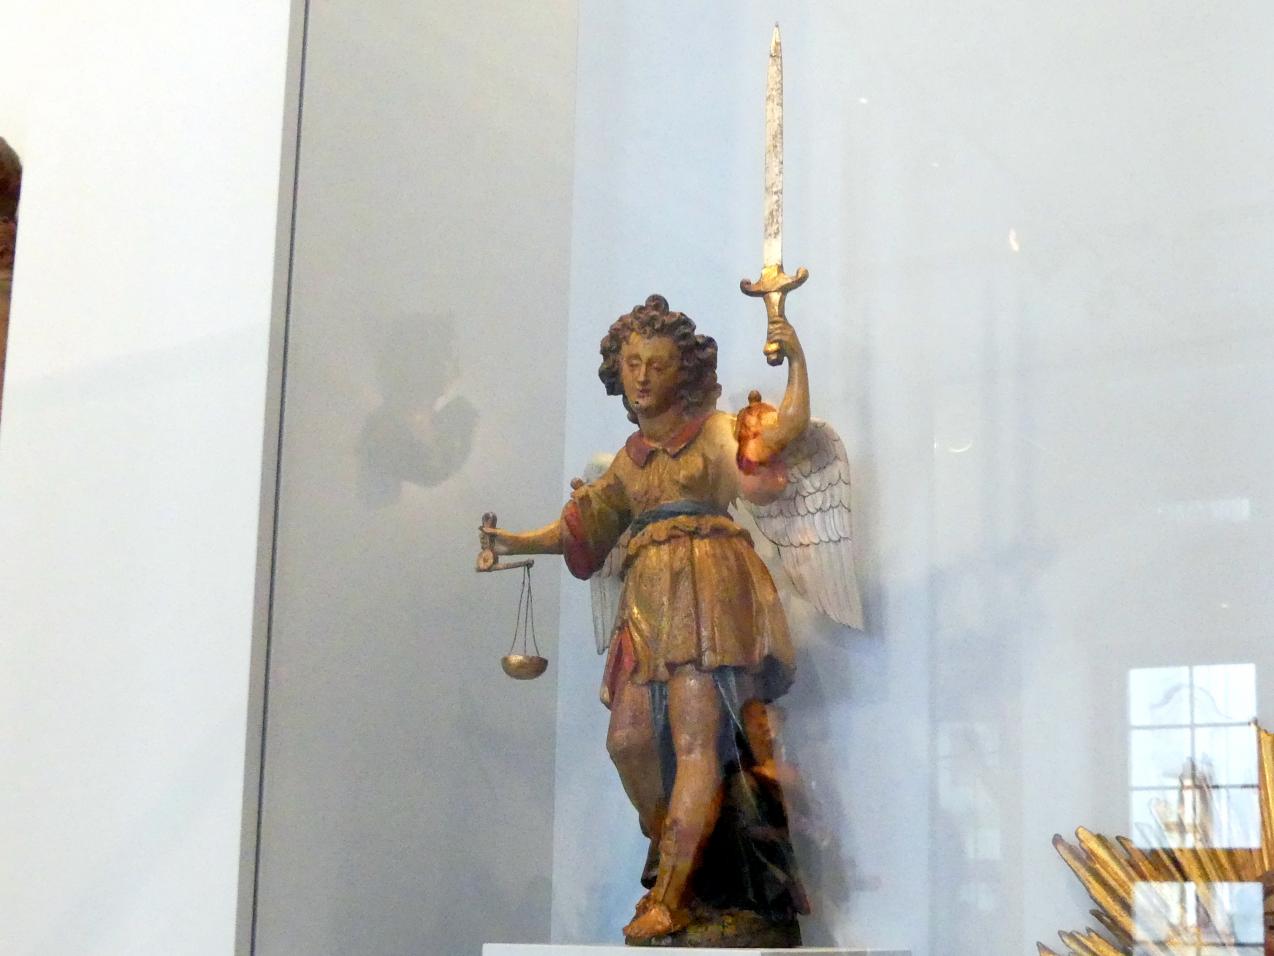 Heiliger Michael, Augsburg, Maximilianmuseum, Barockbildhauer in Schwaben und Augsburg, um 1650, Bild 4/5